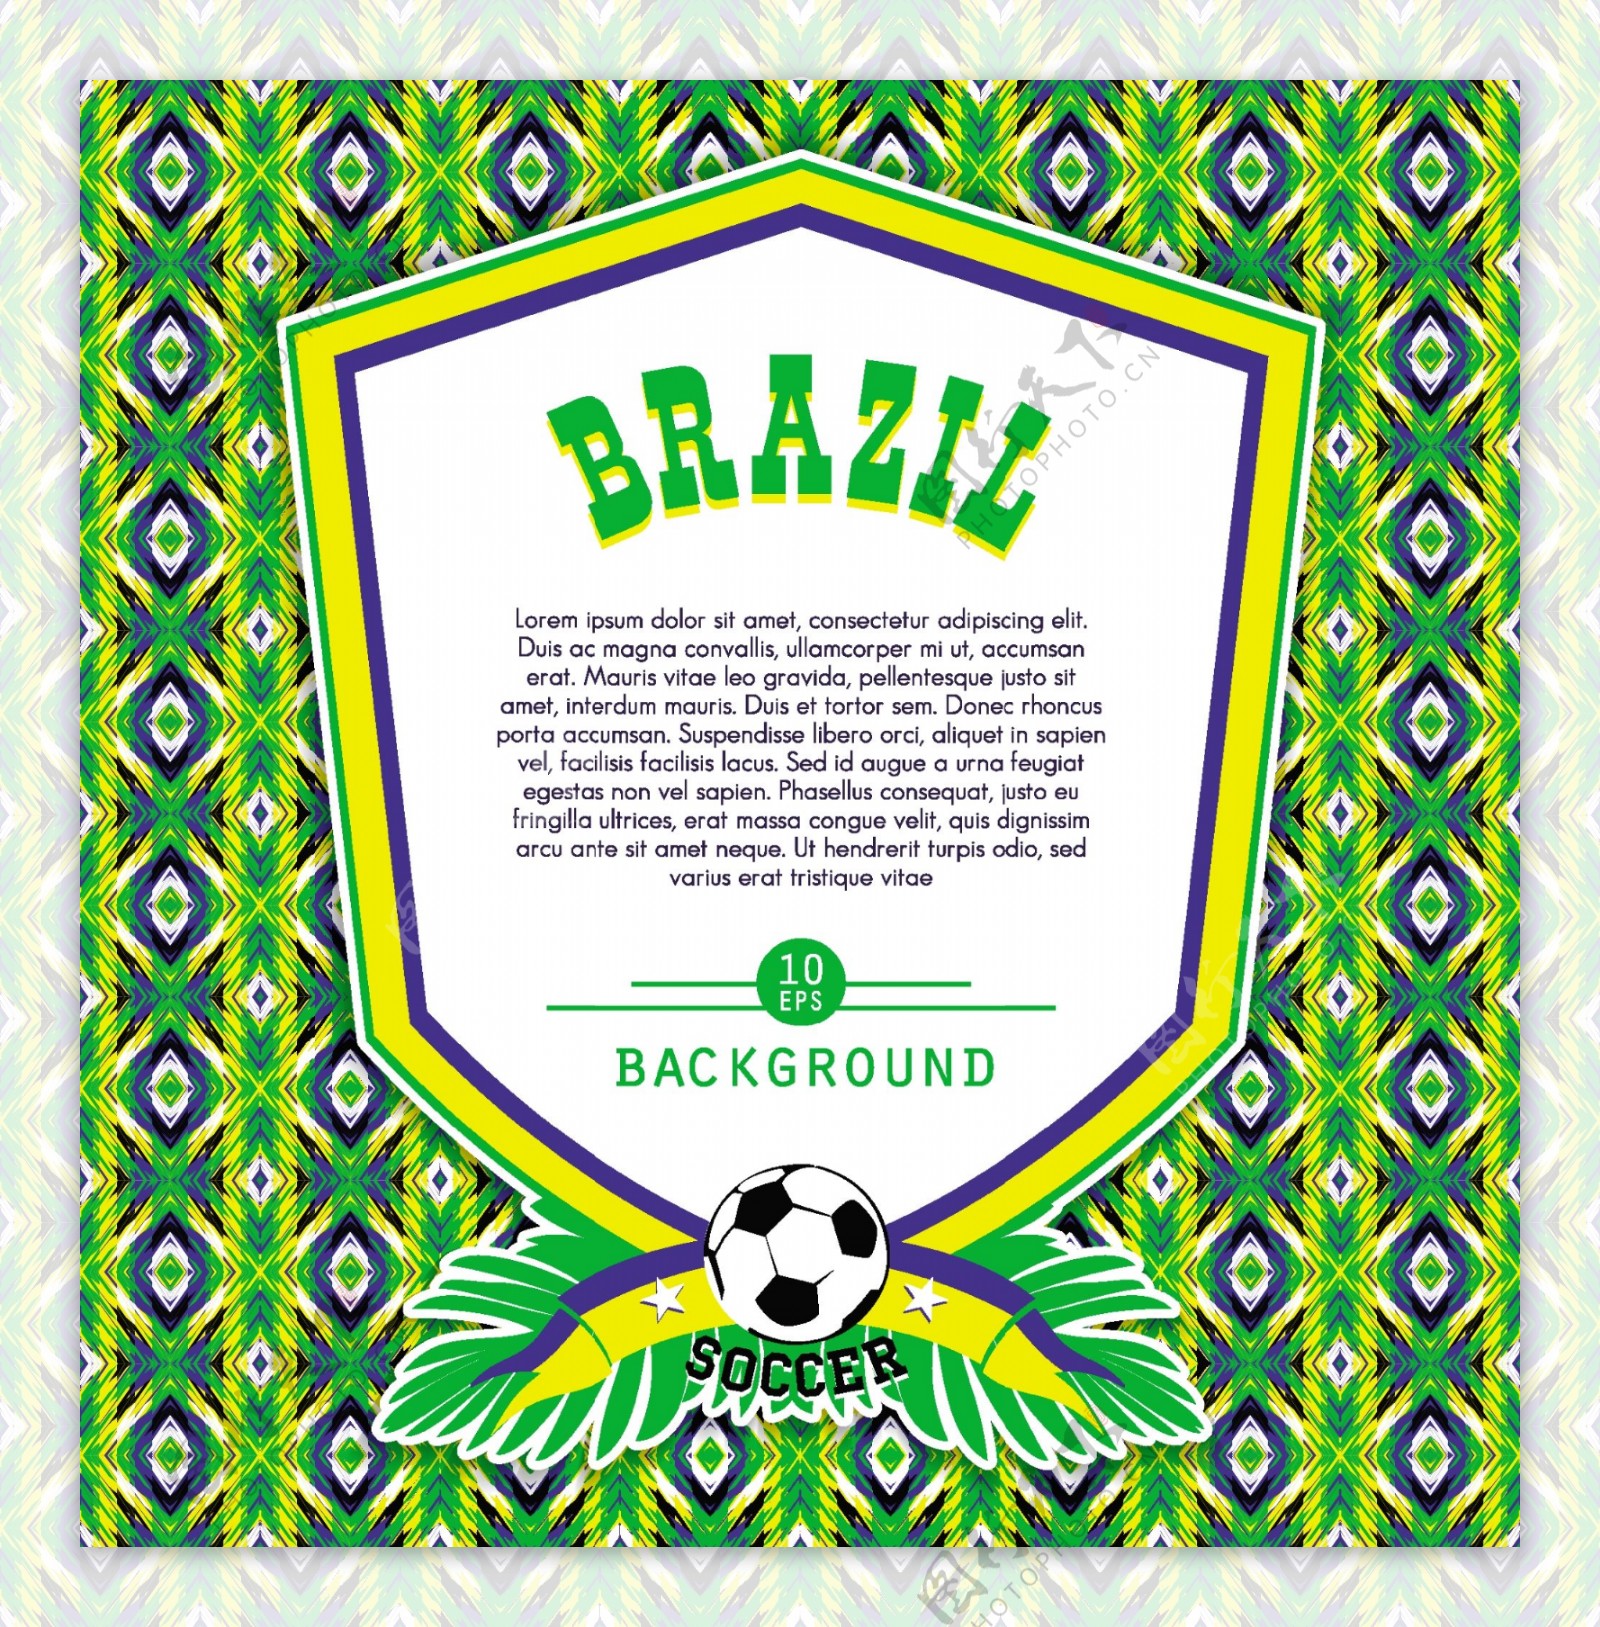 彩色背景的巴西徽章模板